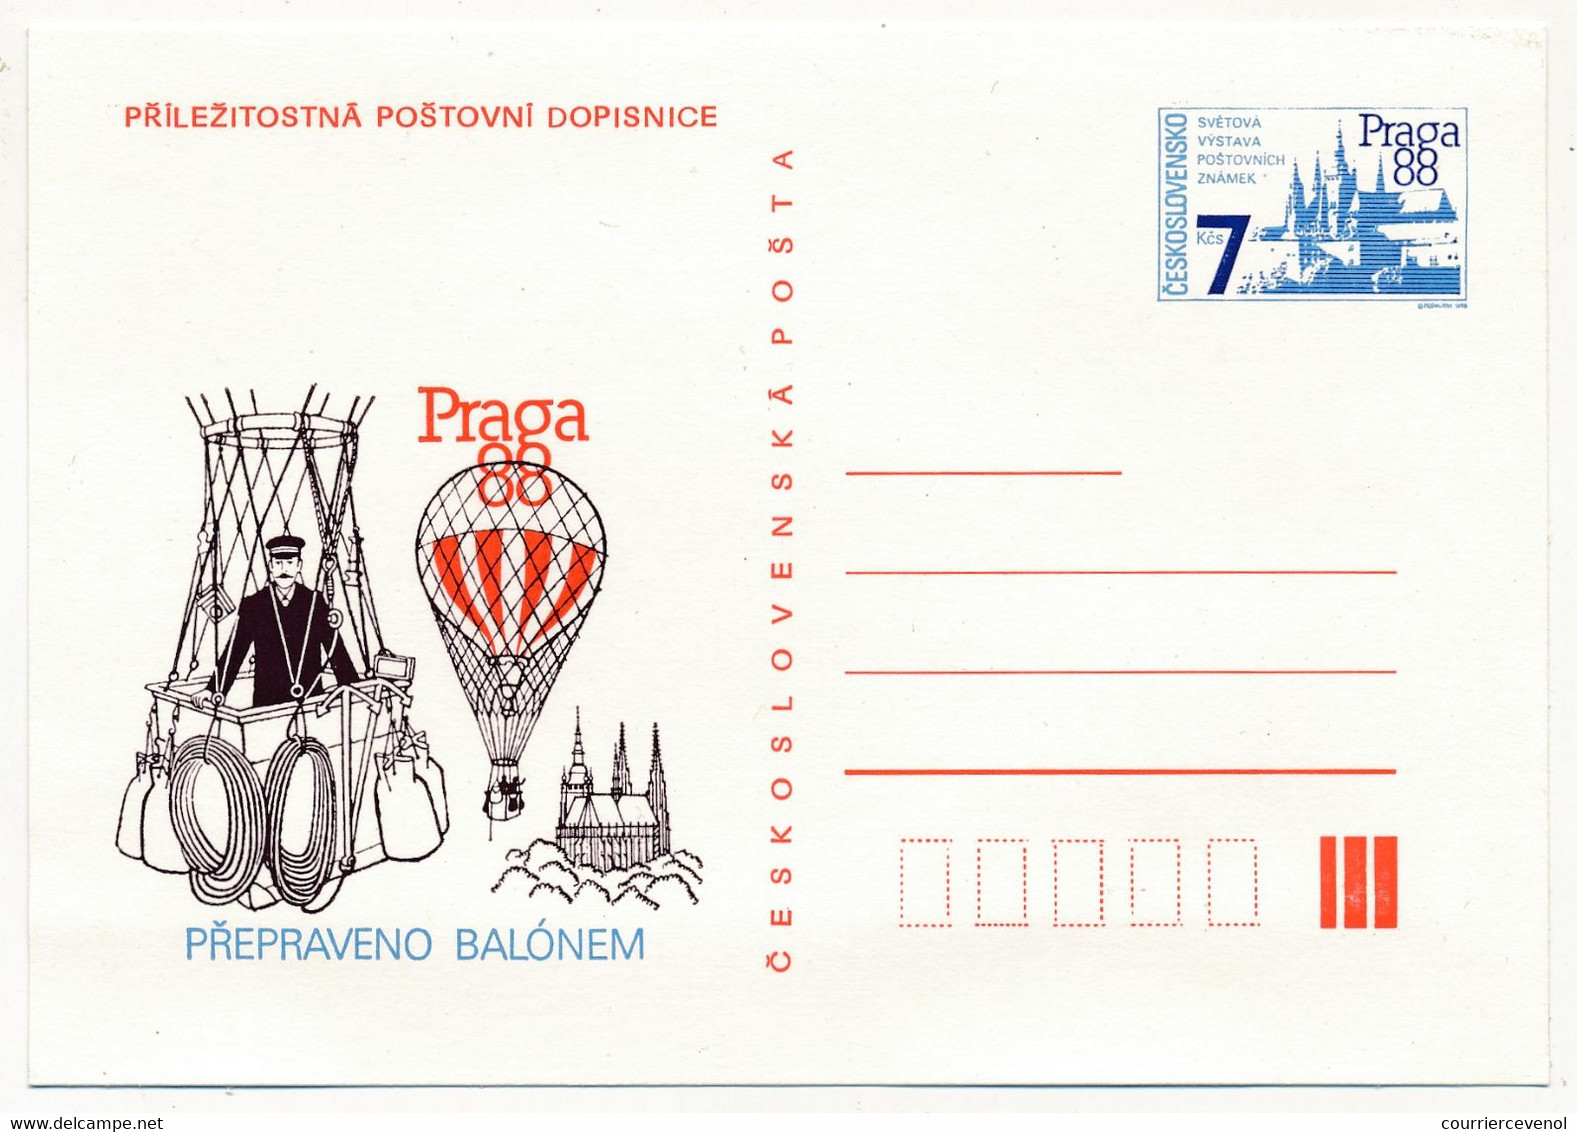 TCHECOSLOVAQUIE - Ensemble de 12 cartes postales (Entiers) au thème "PRAGA 88" - Tous neufs et SUP